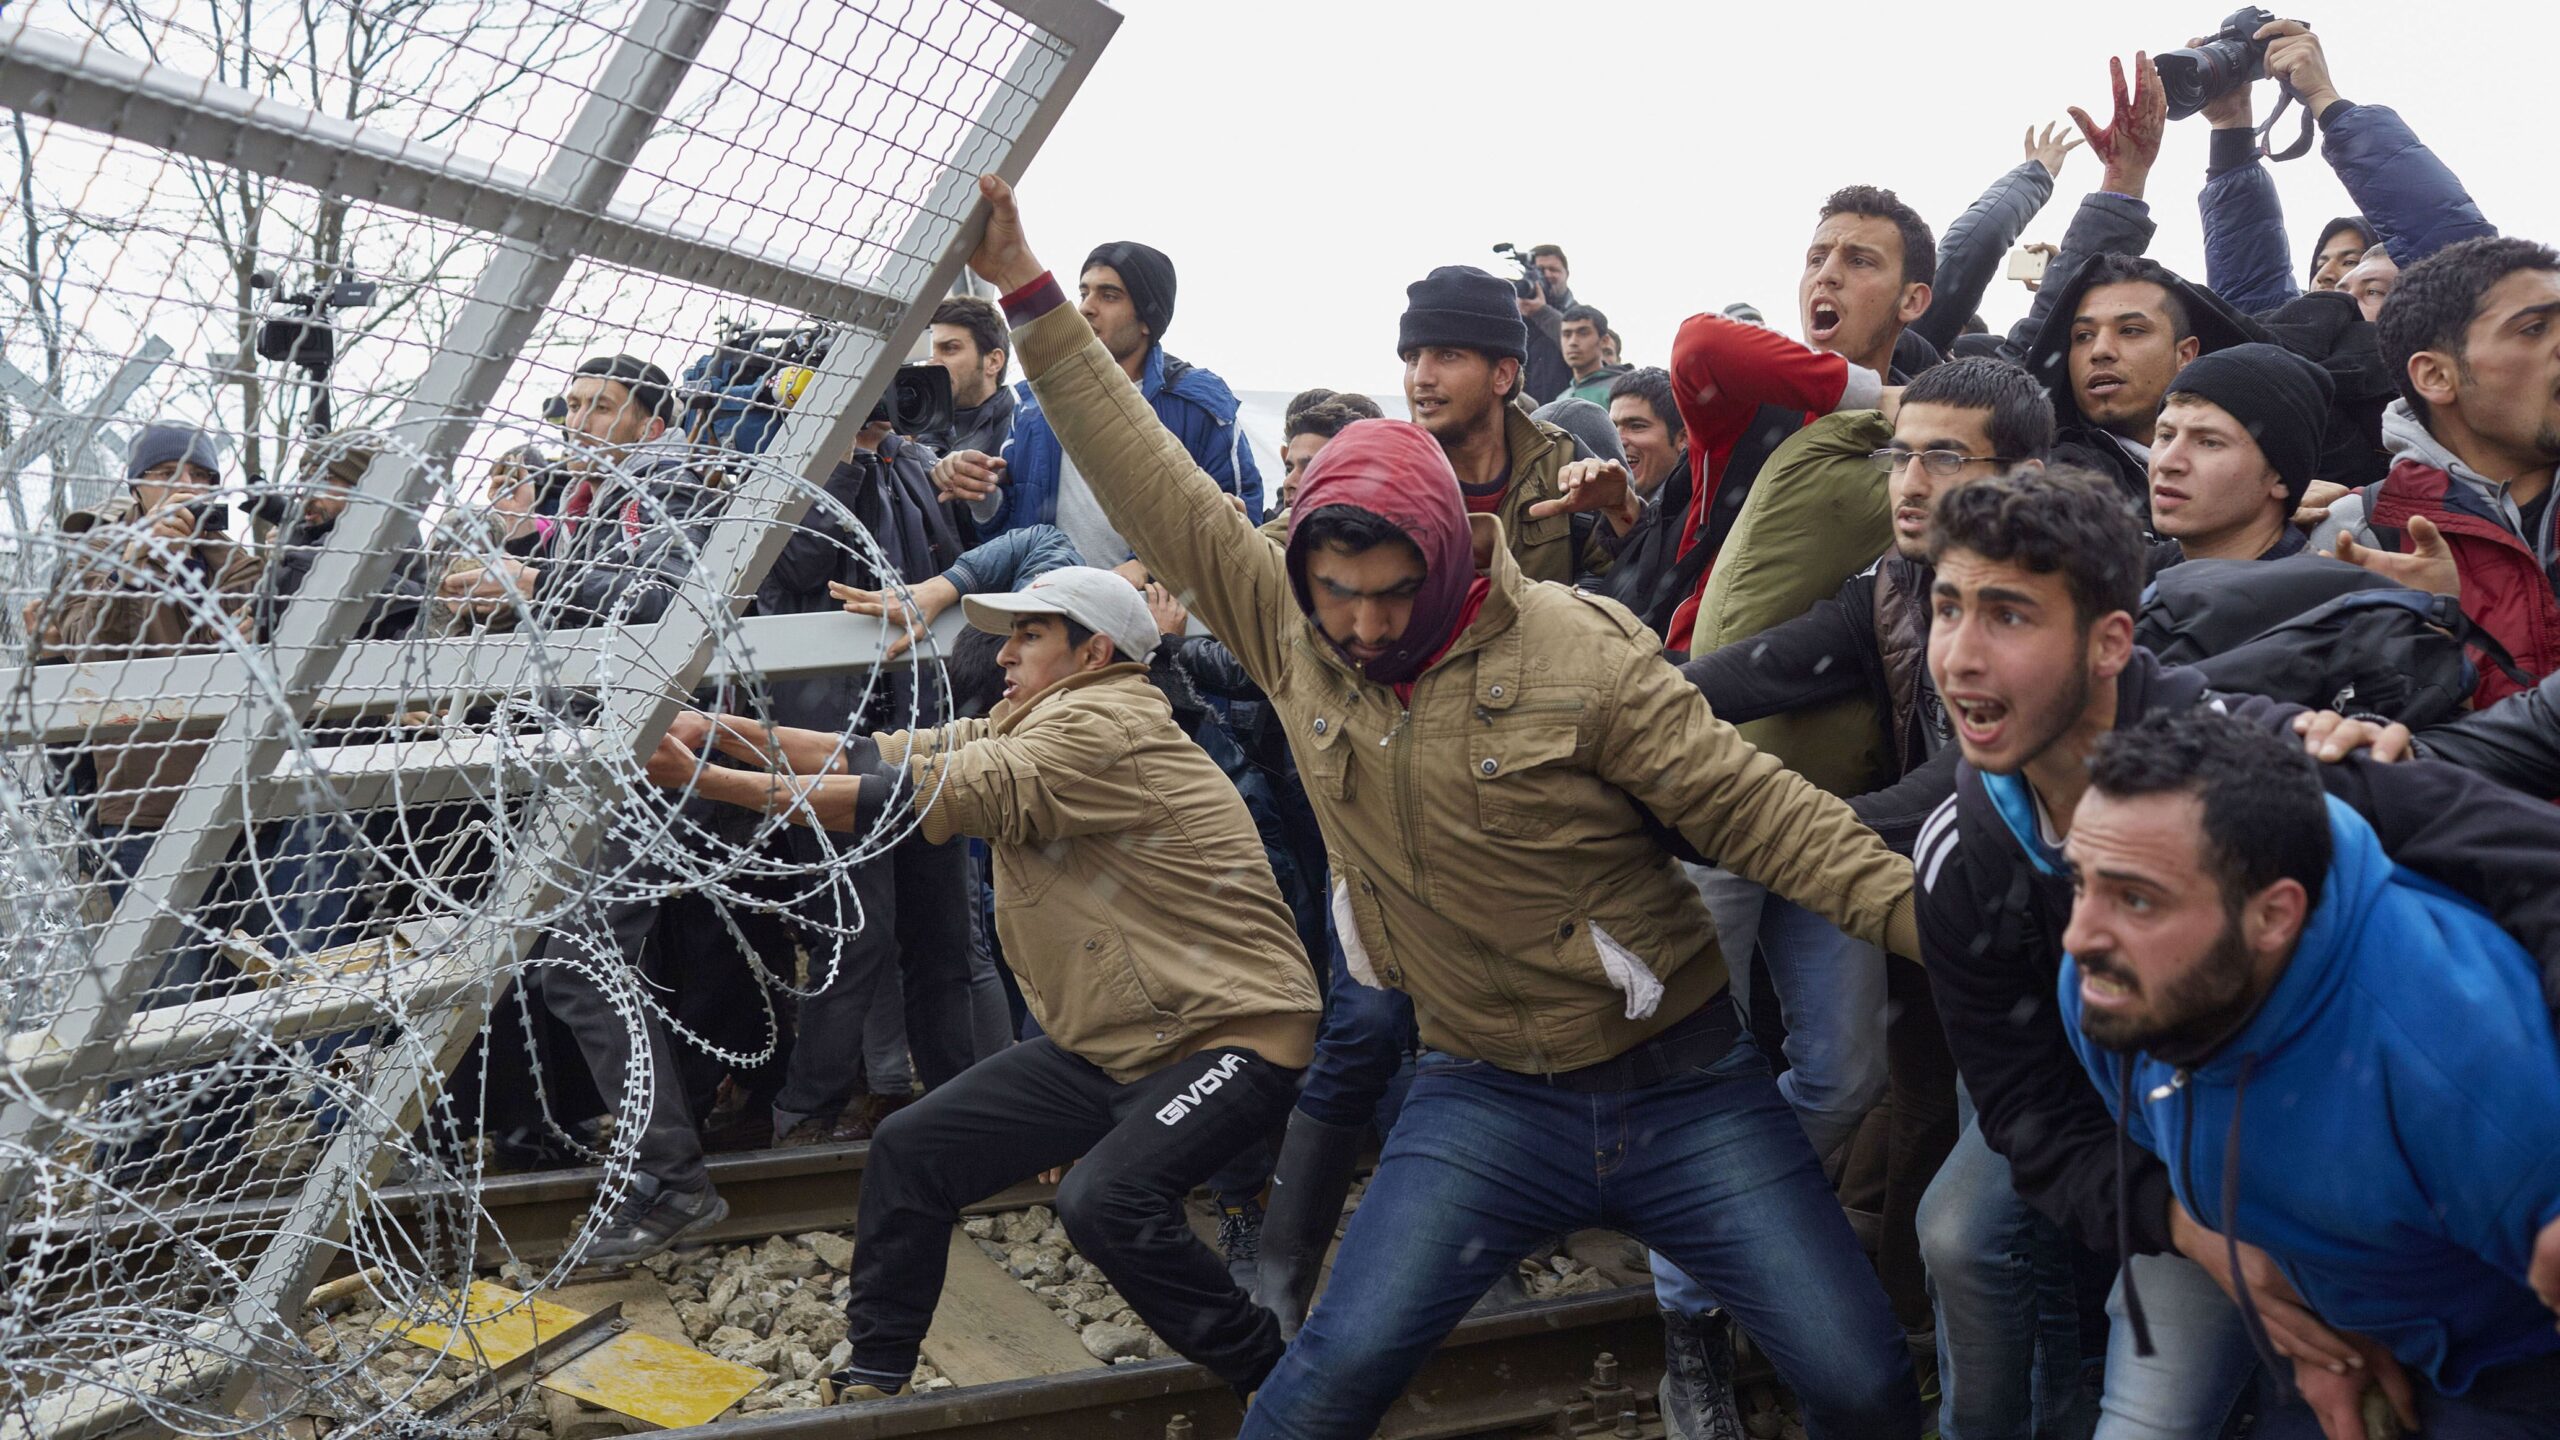 10-ből 7 európai szerint túl sok bevándorlót engednek be az országok, kiemelt kép